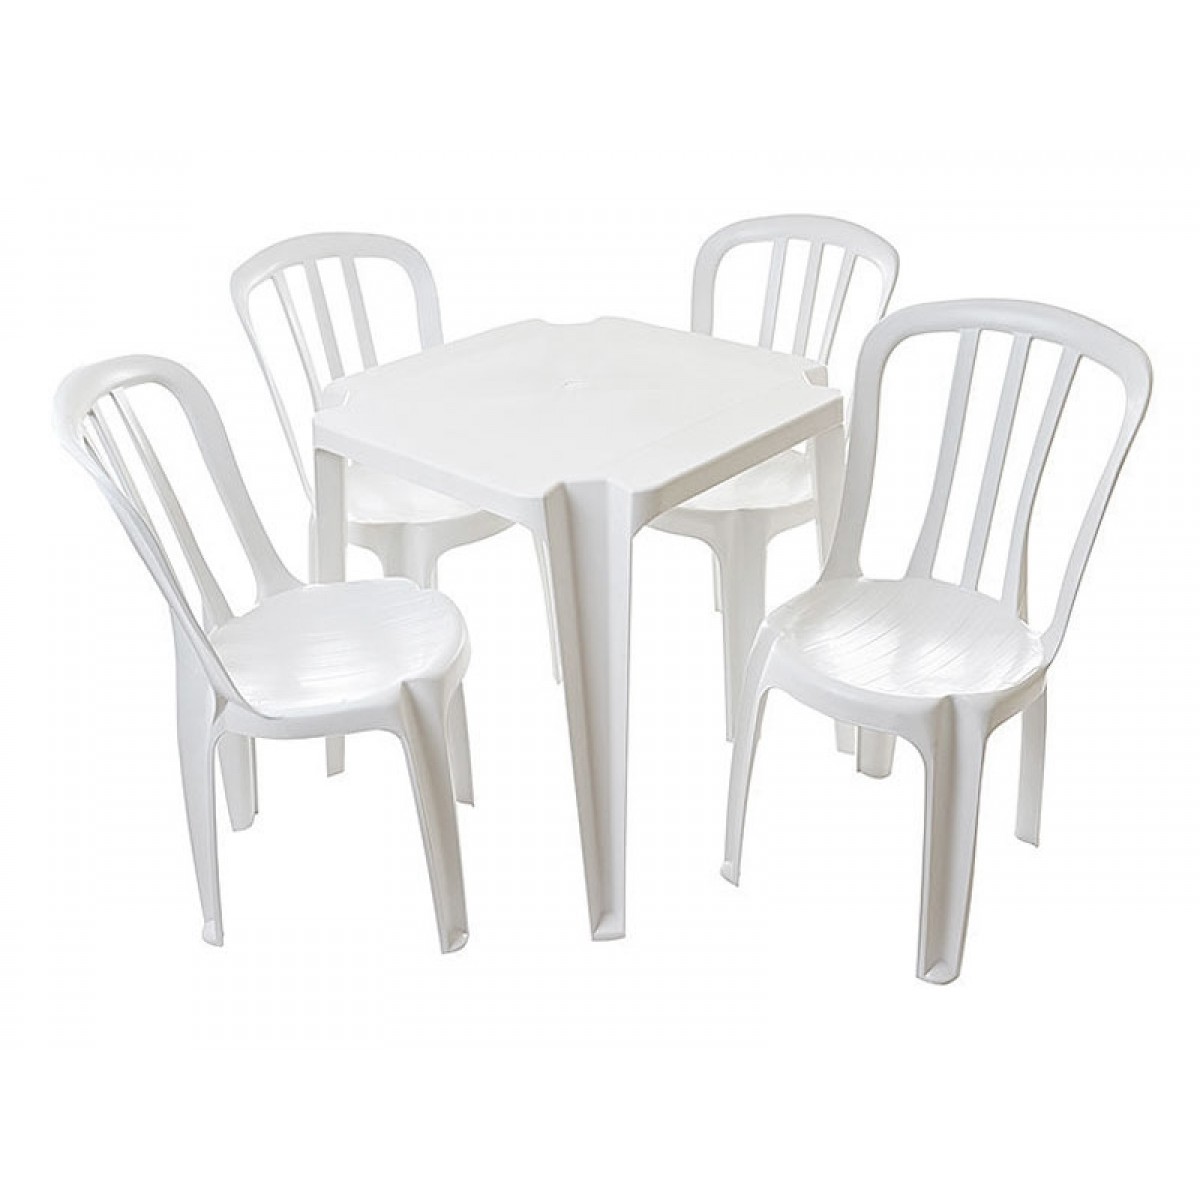 Natali Brink - Jogo de Mesa plásticas c/ 4 cadeiras - Produtos